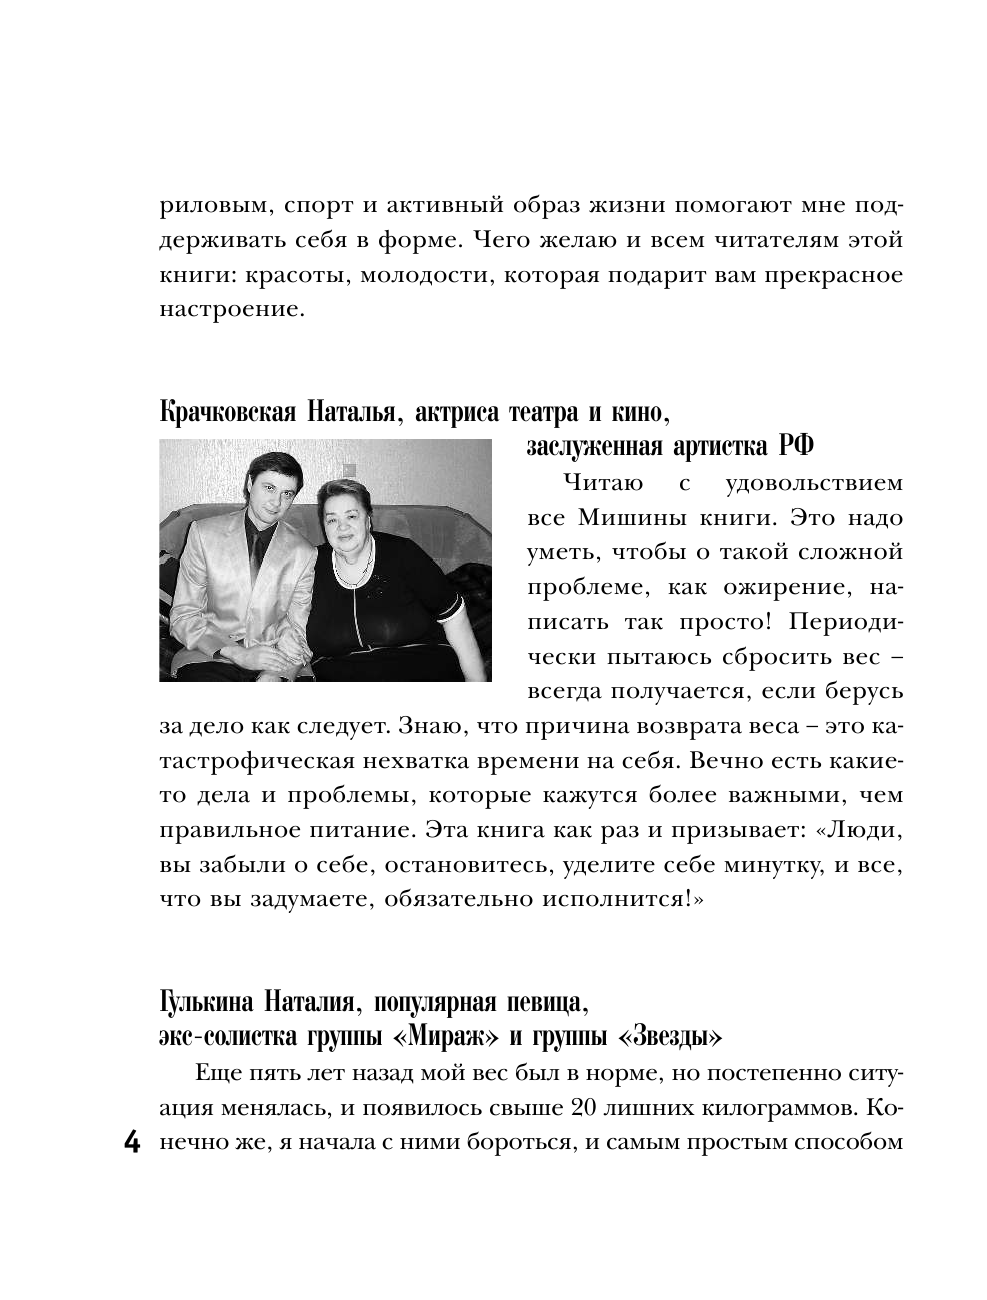 Гаврилов Михаил Алексеевич Pro жизнь без жира. Комплексная proграмма proтив ожирения - страница 4